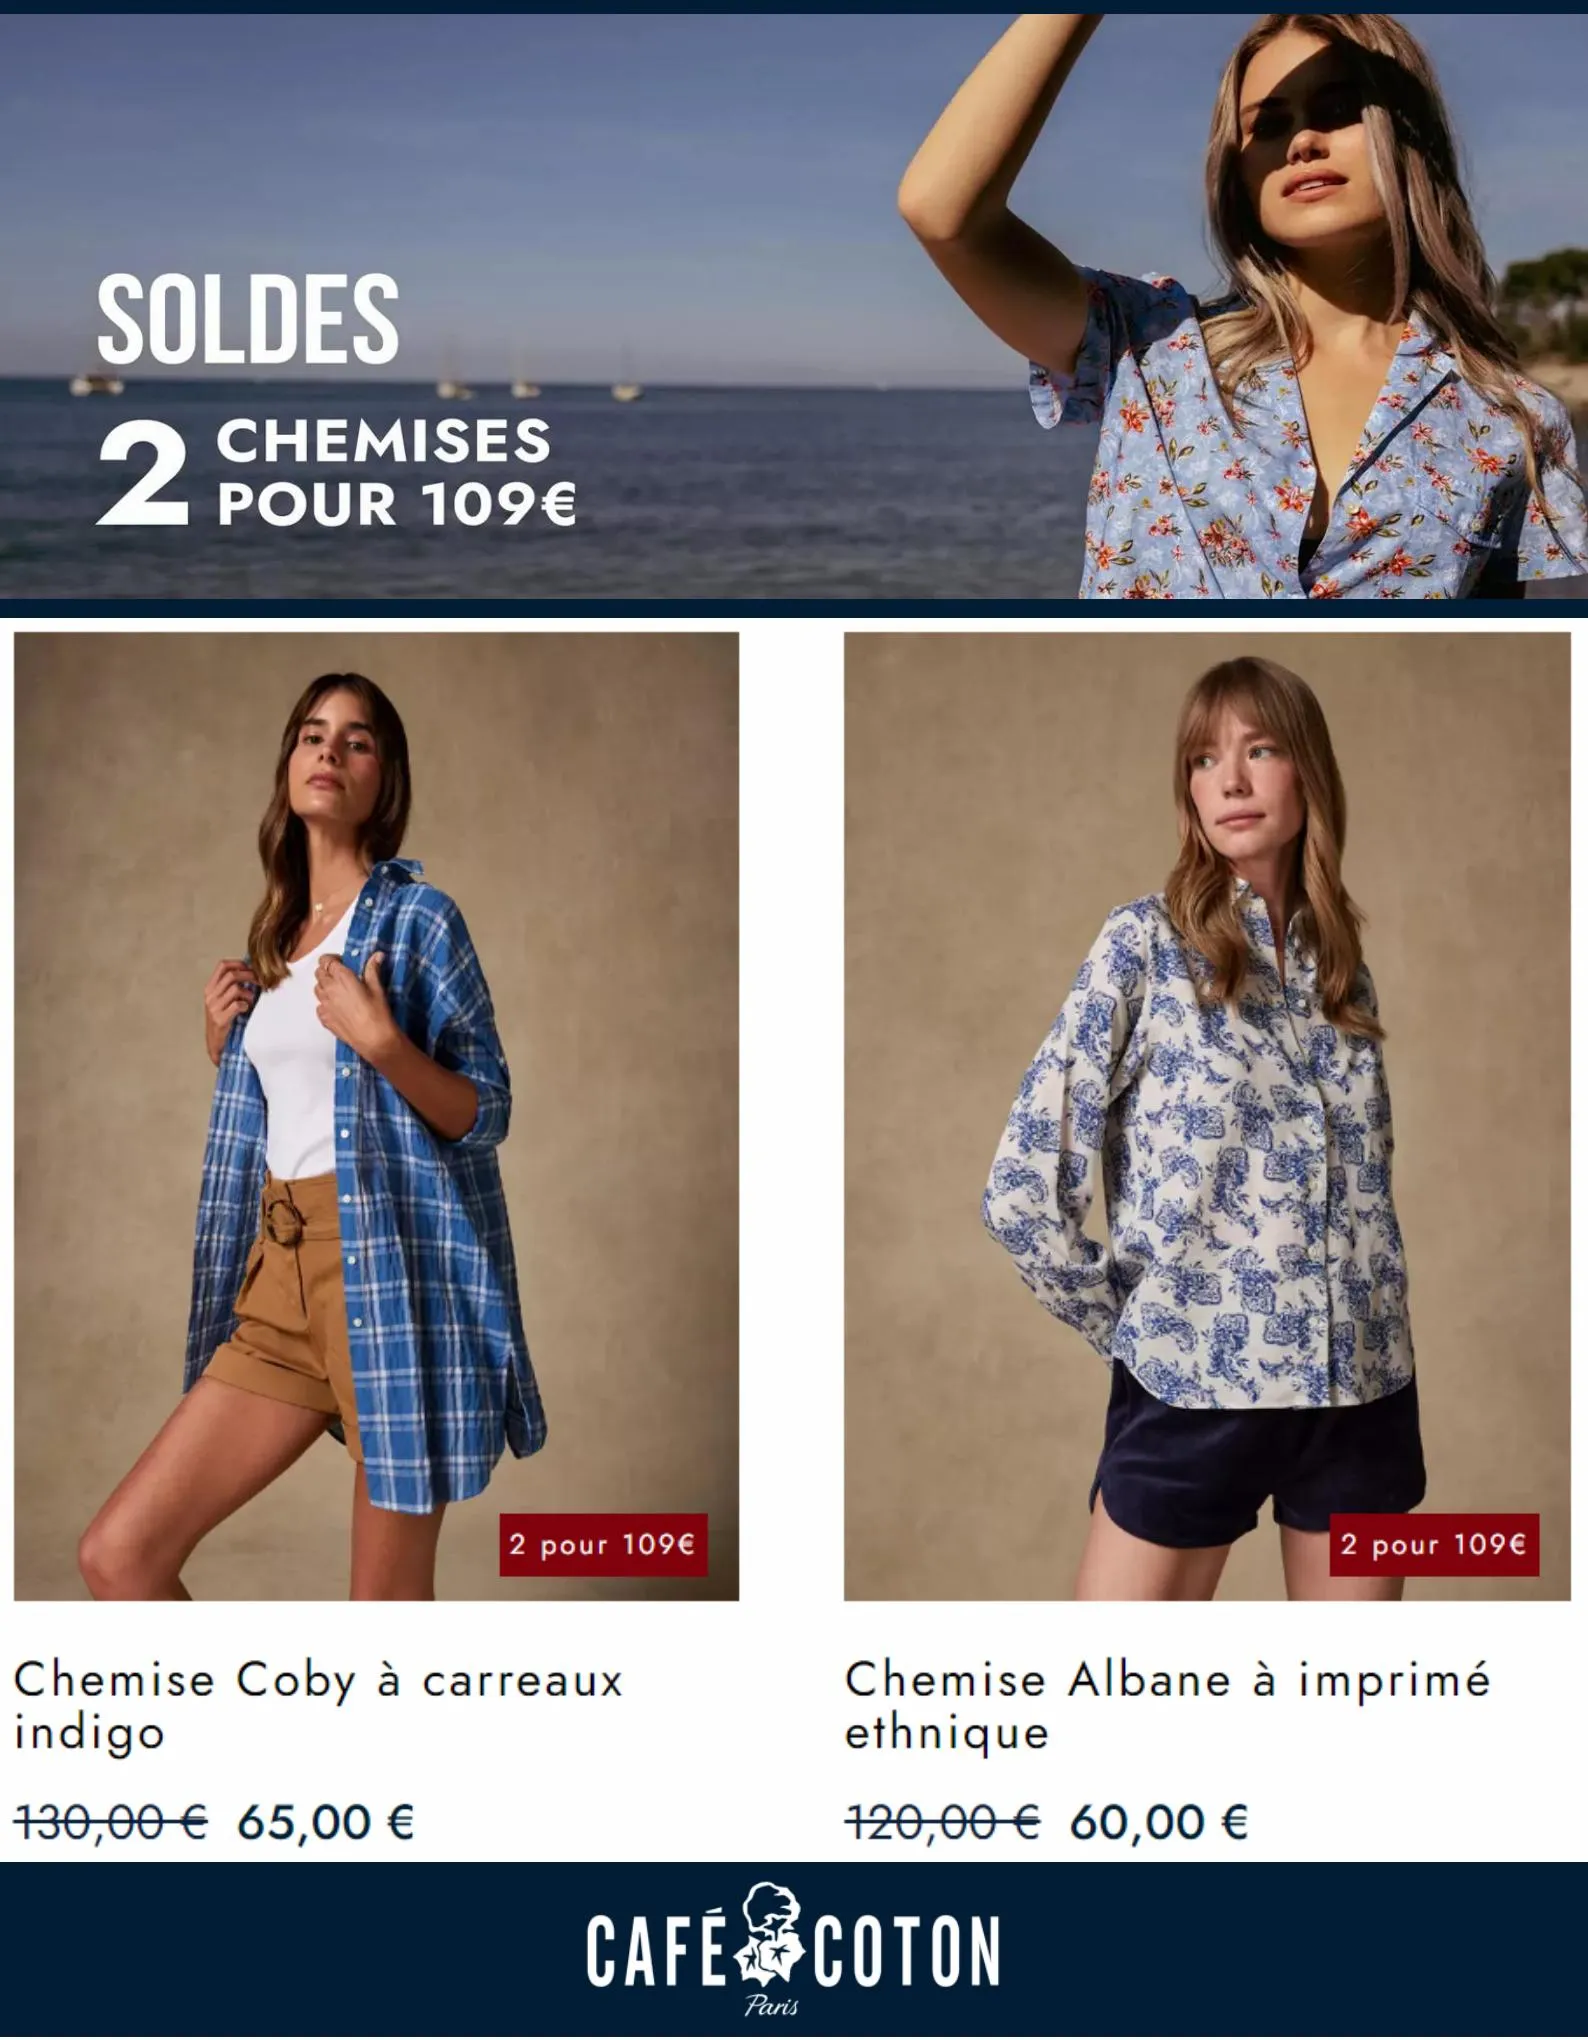 Catalogue Soldes 2 Chemises pour 109€, page 00007